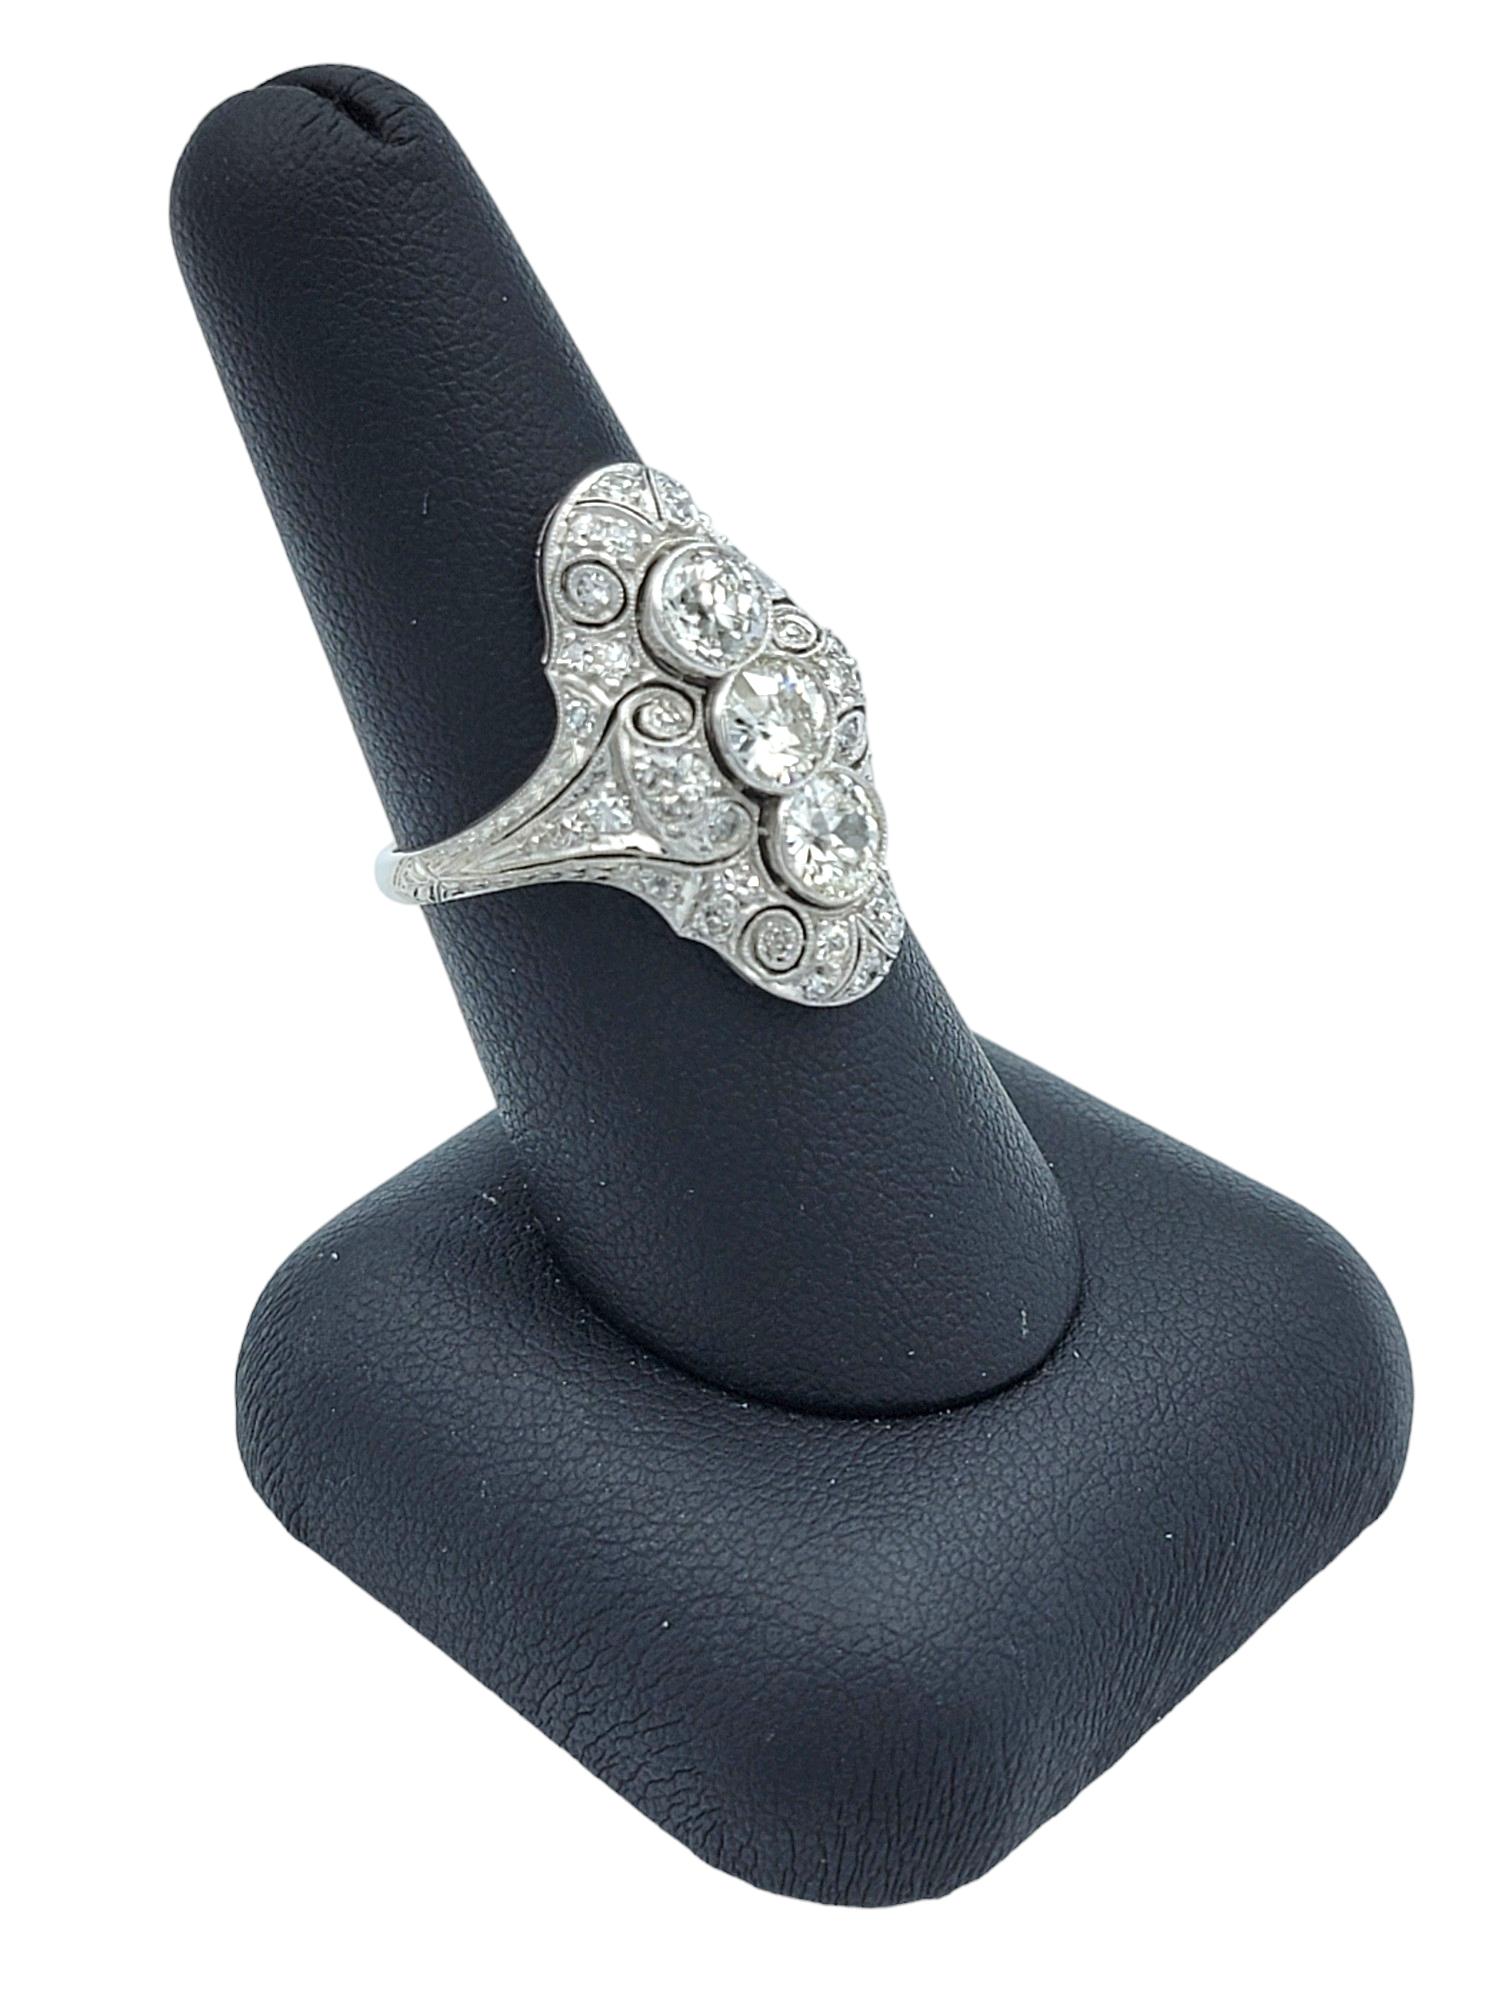 Art Deco Old European Cut Diamond Cocktail Ring with Milgrain Design in Platinum For Sale 5